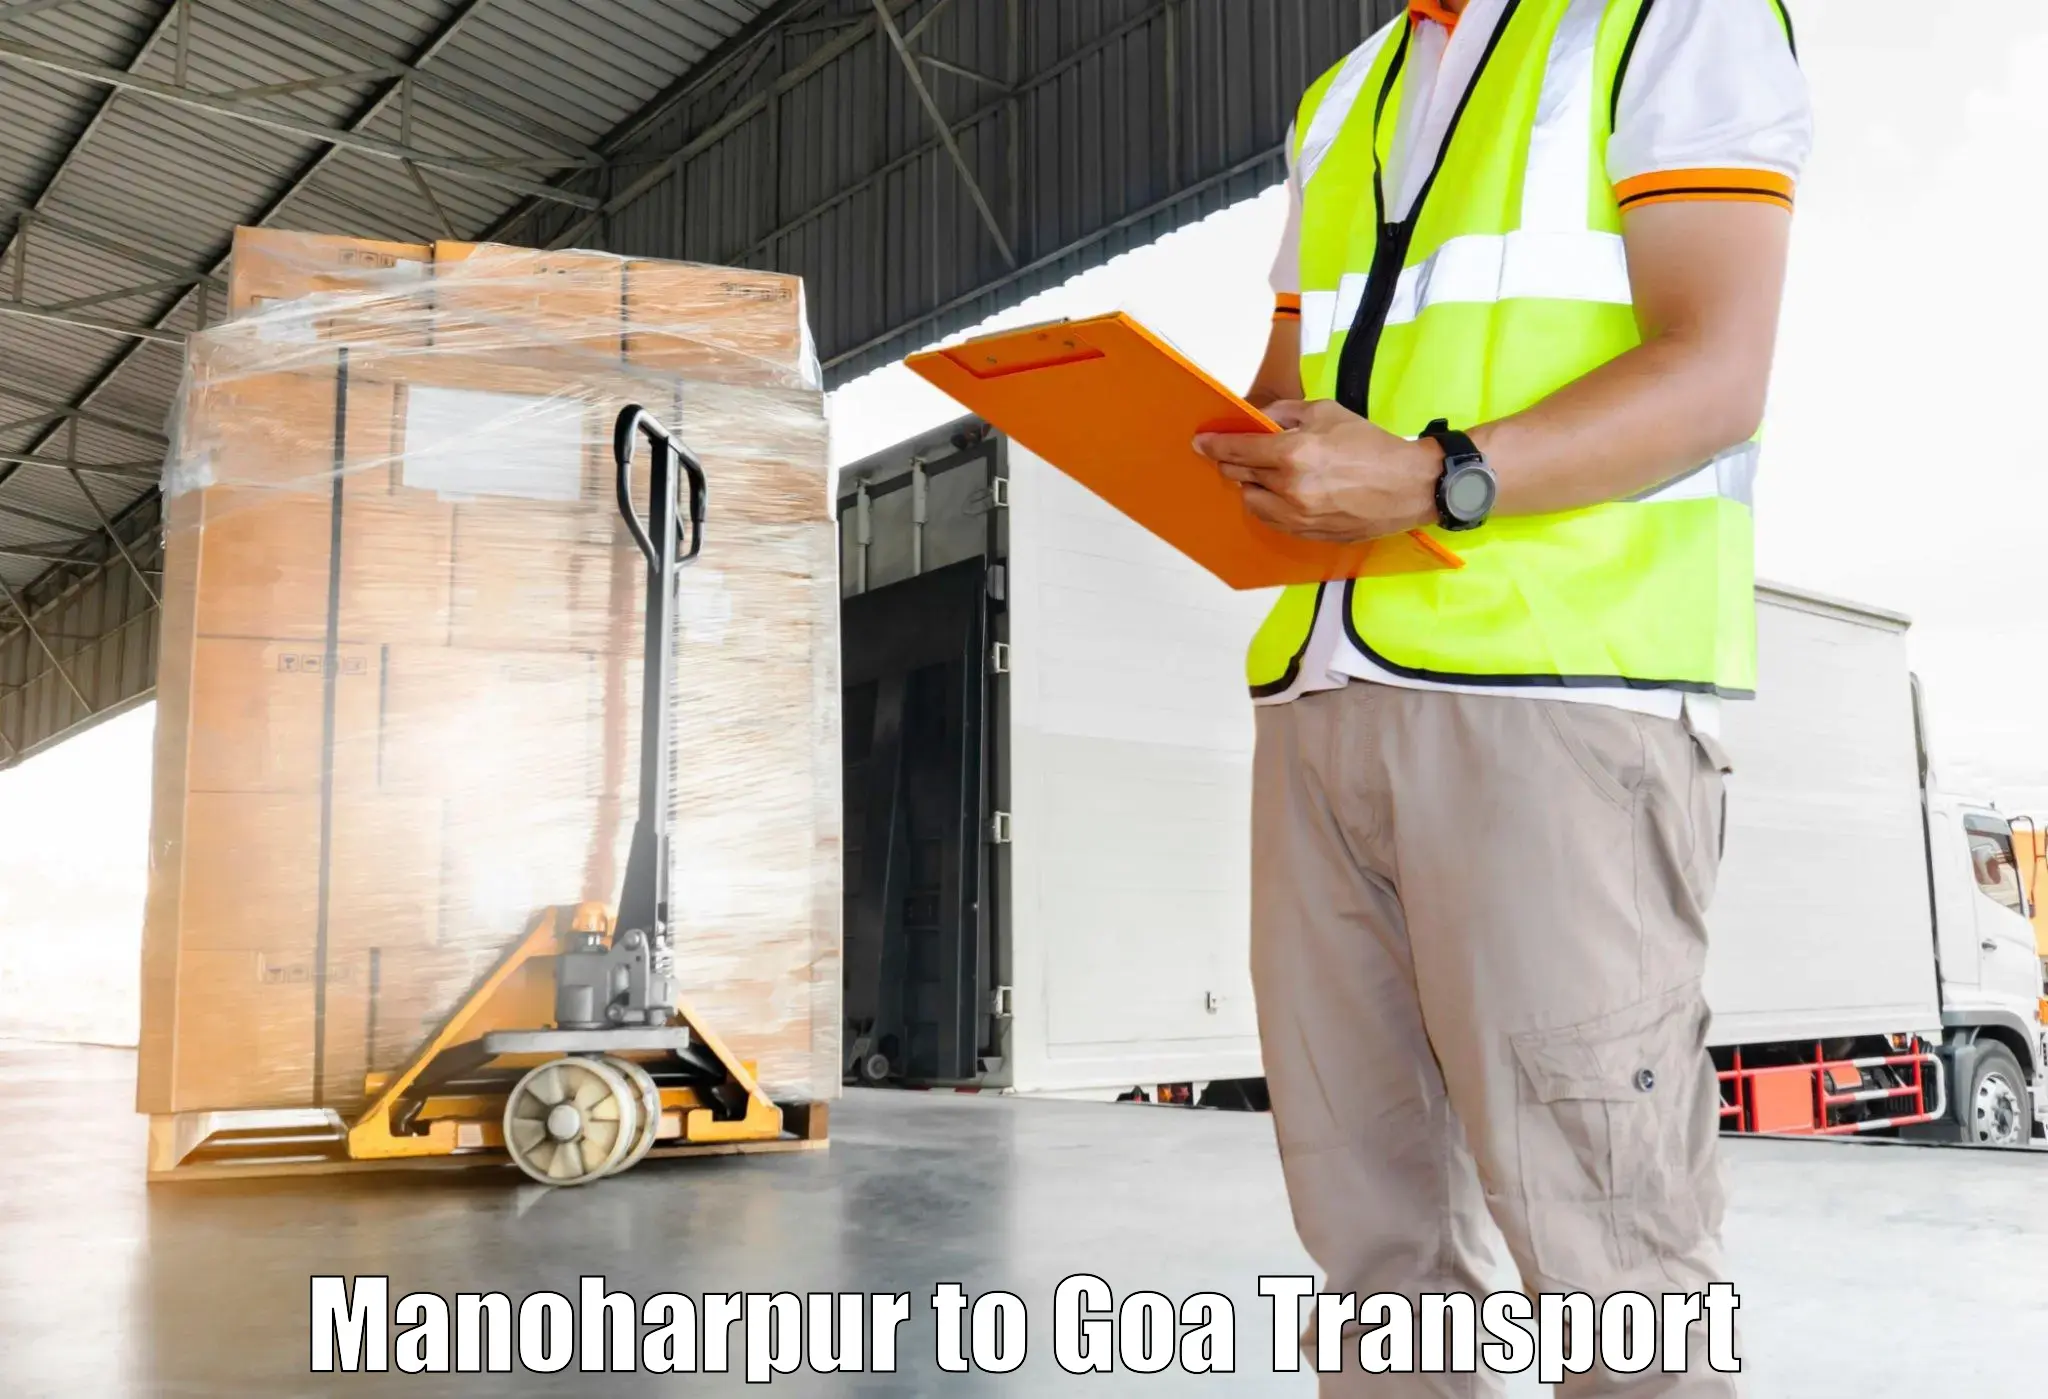 Commercial transport service Manoharpur to Mormugao Port